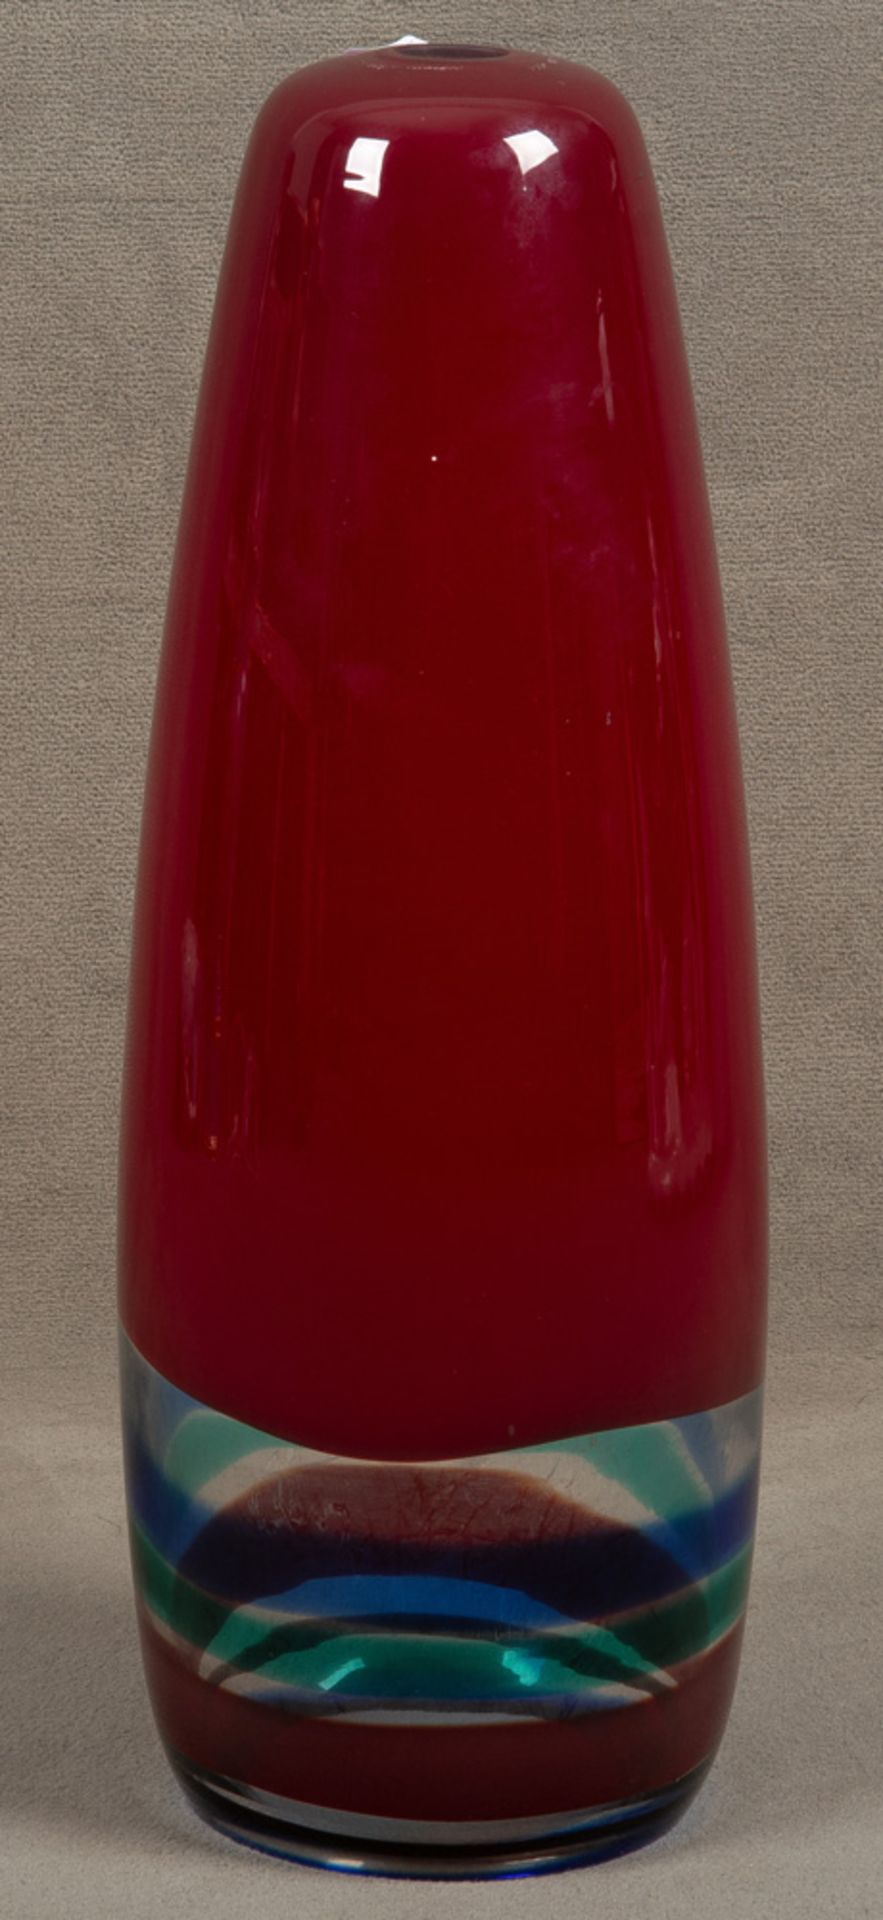 Deckenlampe. Murano, Venini, Massimo Vignelli (1931-2014) dat. 1956. Farbloses Glas,